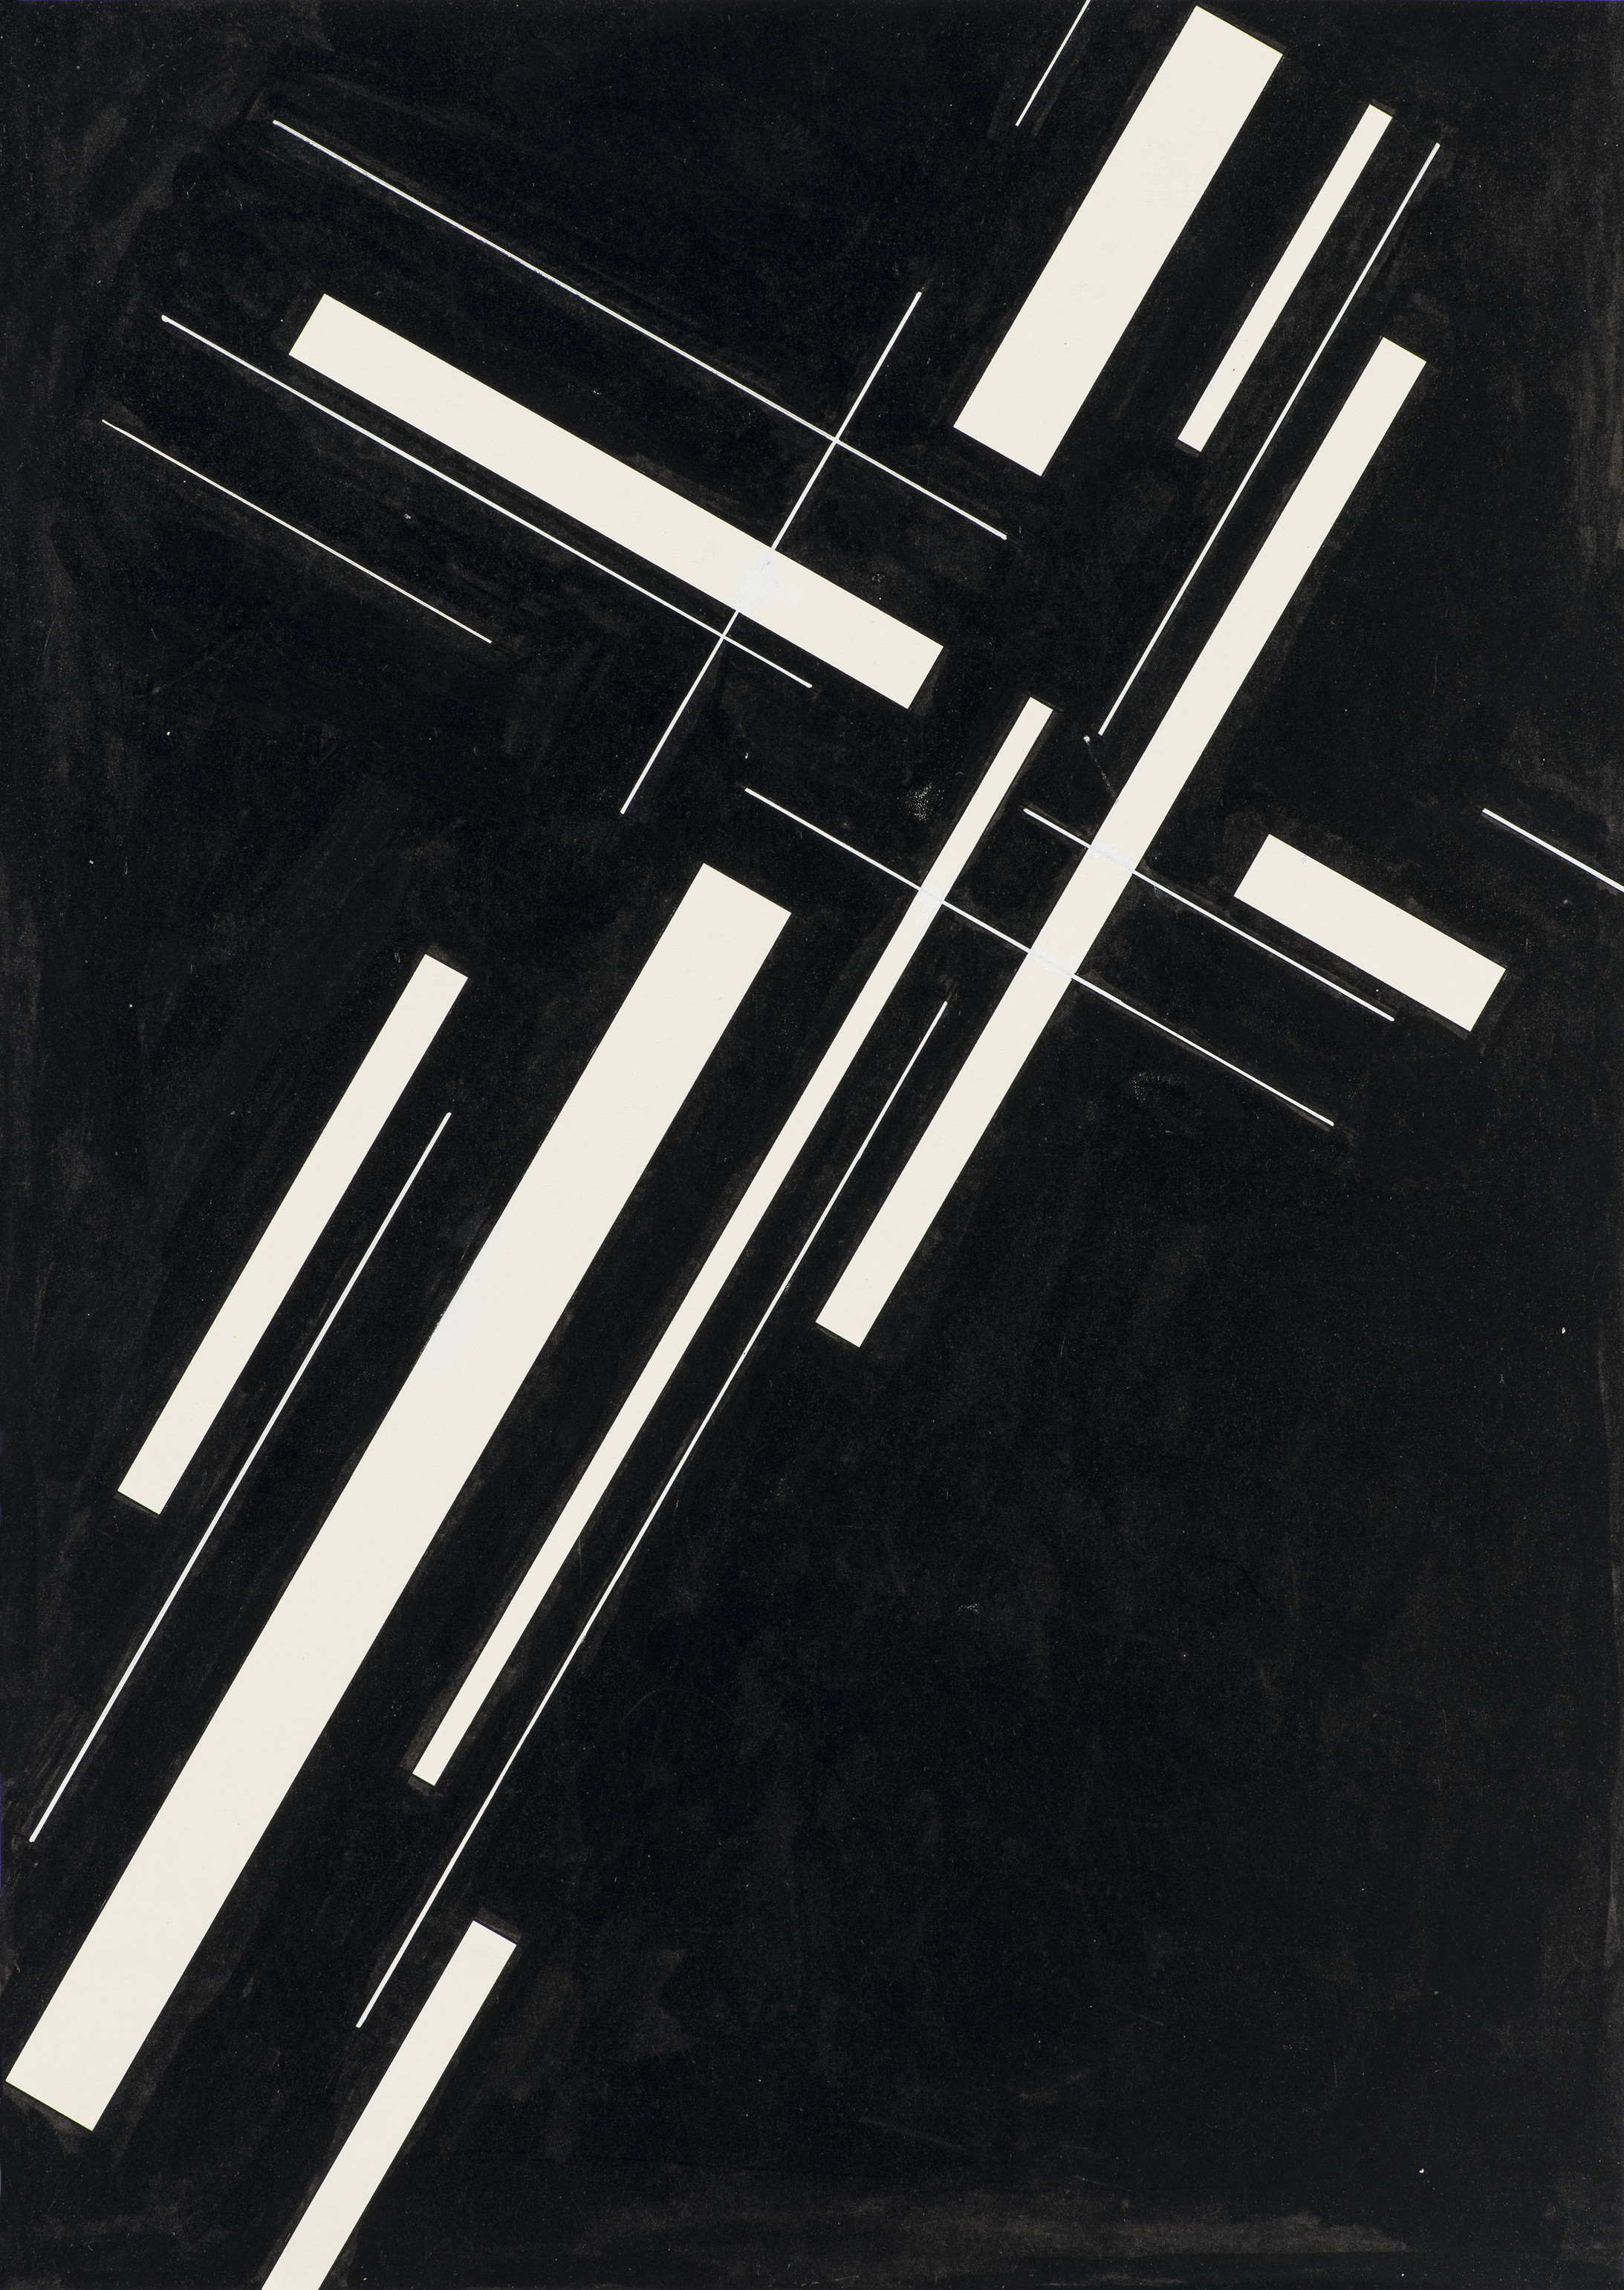 Josef Müller-Brockmann, Entwurf Musikplakat, 1955, Museum für Gestaltung Zürich, Grafiksammlung